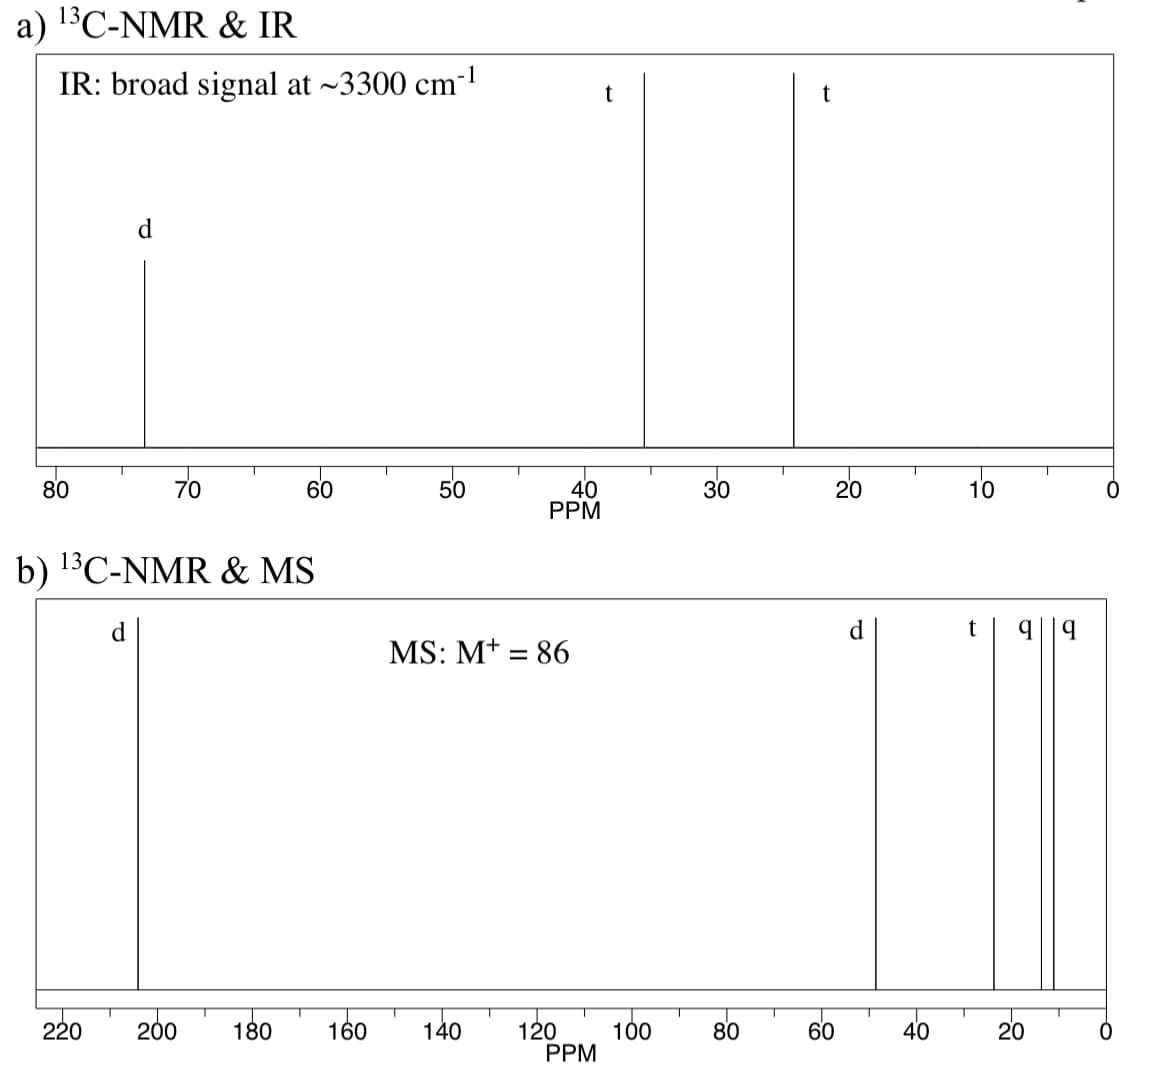 a) ¹3C-NMR & IR
IR: broad signal at ~3300 cm³
80
70
220
b) ¹3C-NMR & MS
d
200
60
180
160
50
MS: M+ = 86
140
40
PPM
T
120
T
PPM
t
100
30
80
t
20
60
40
10
t
T
99
20